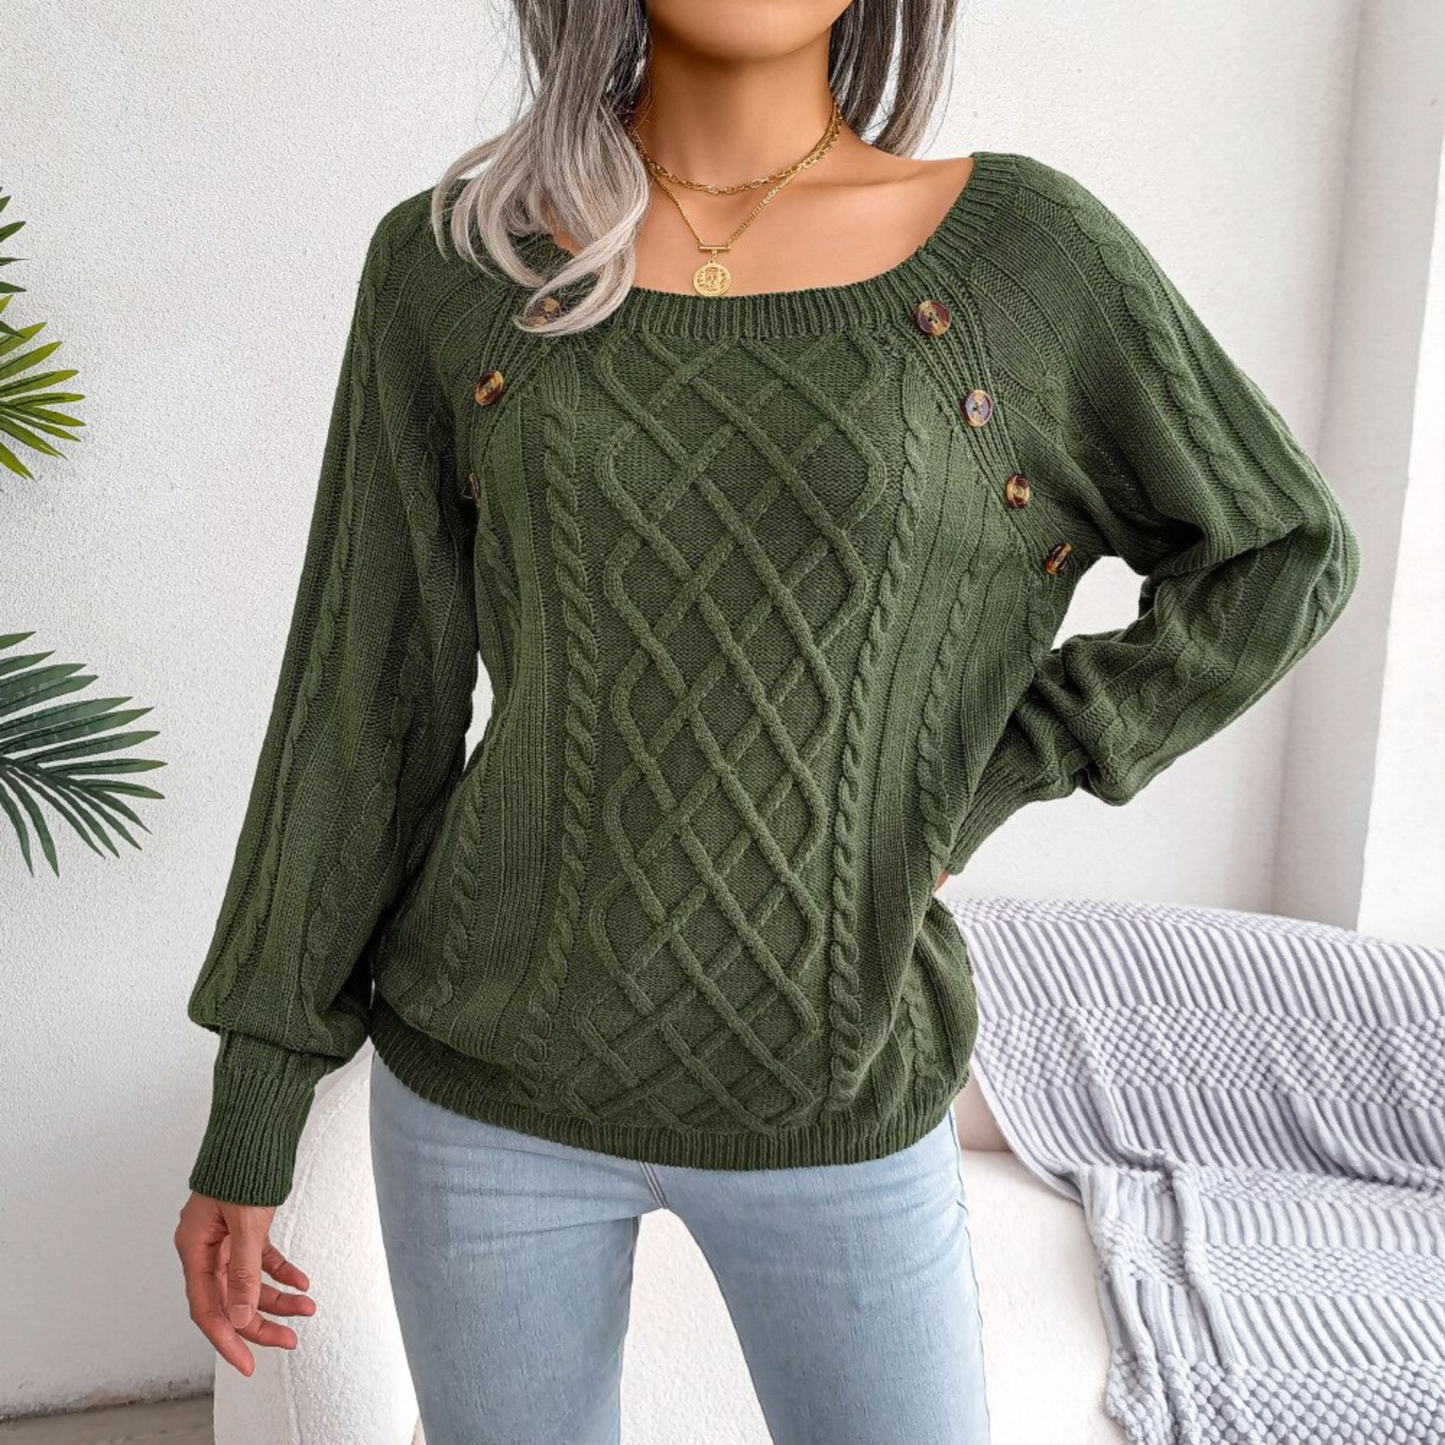 Sofia - Green Square Neck Pullover Sweater Top